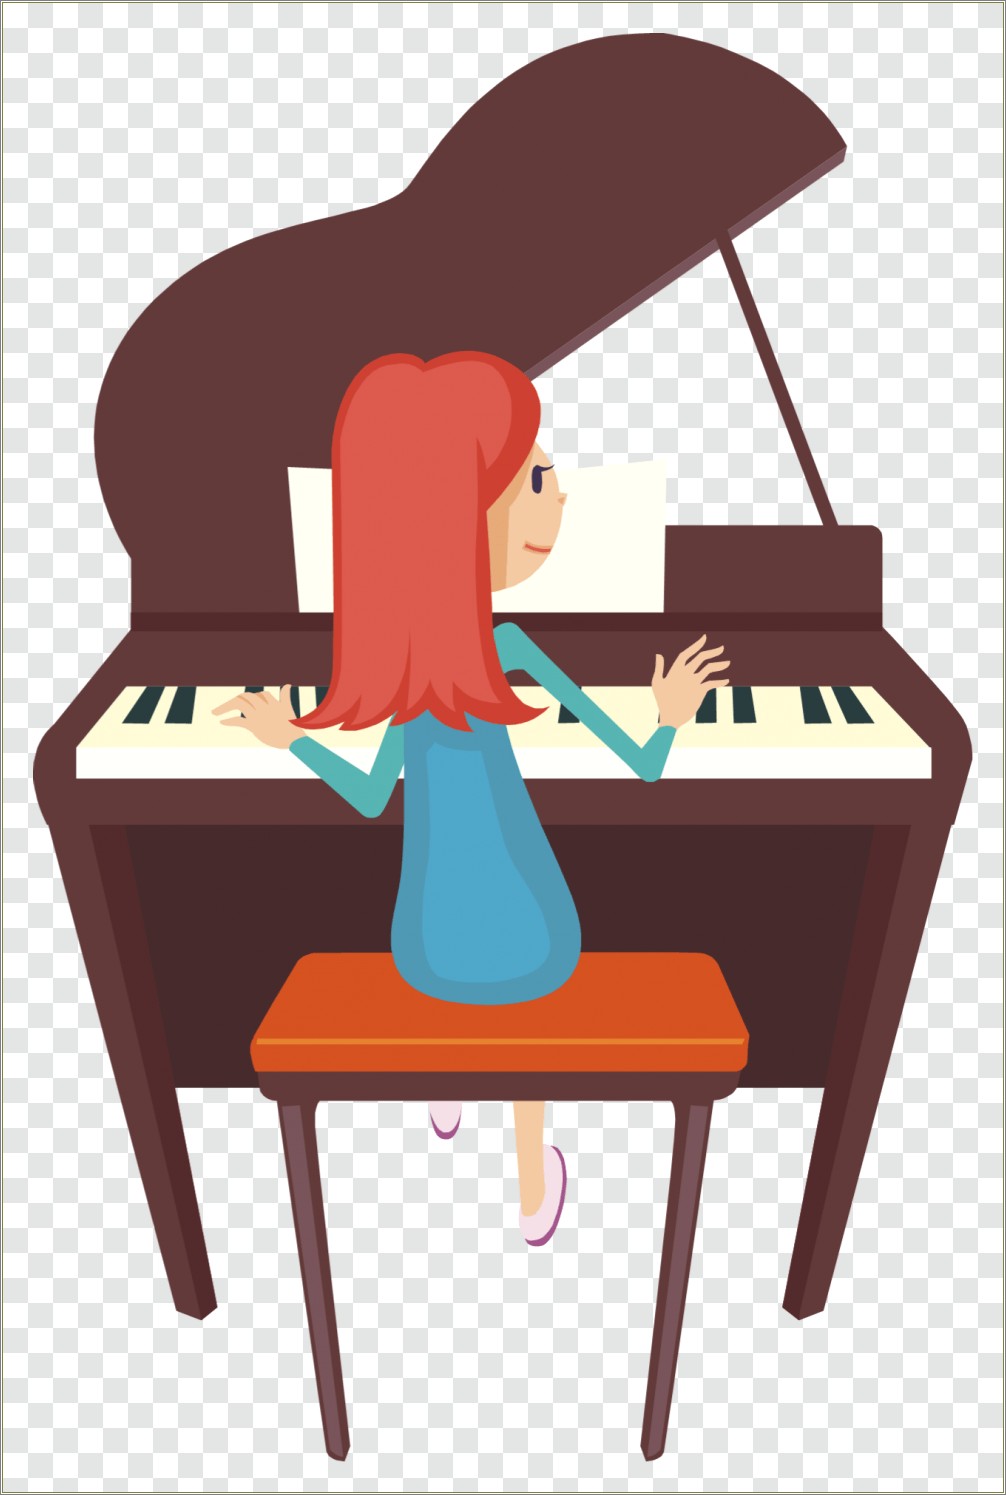 Free Download Piano Recital Invitation Template Microsoft Word